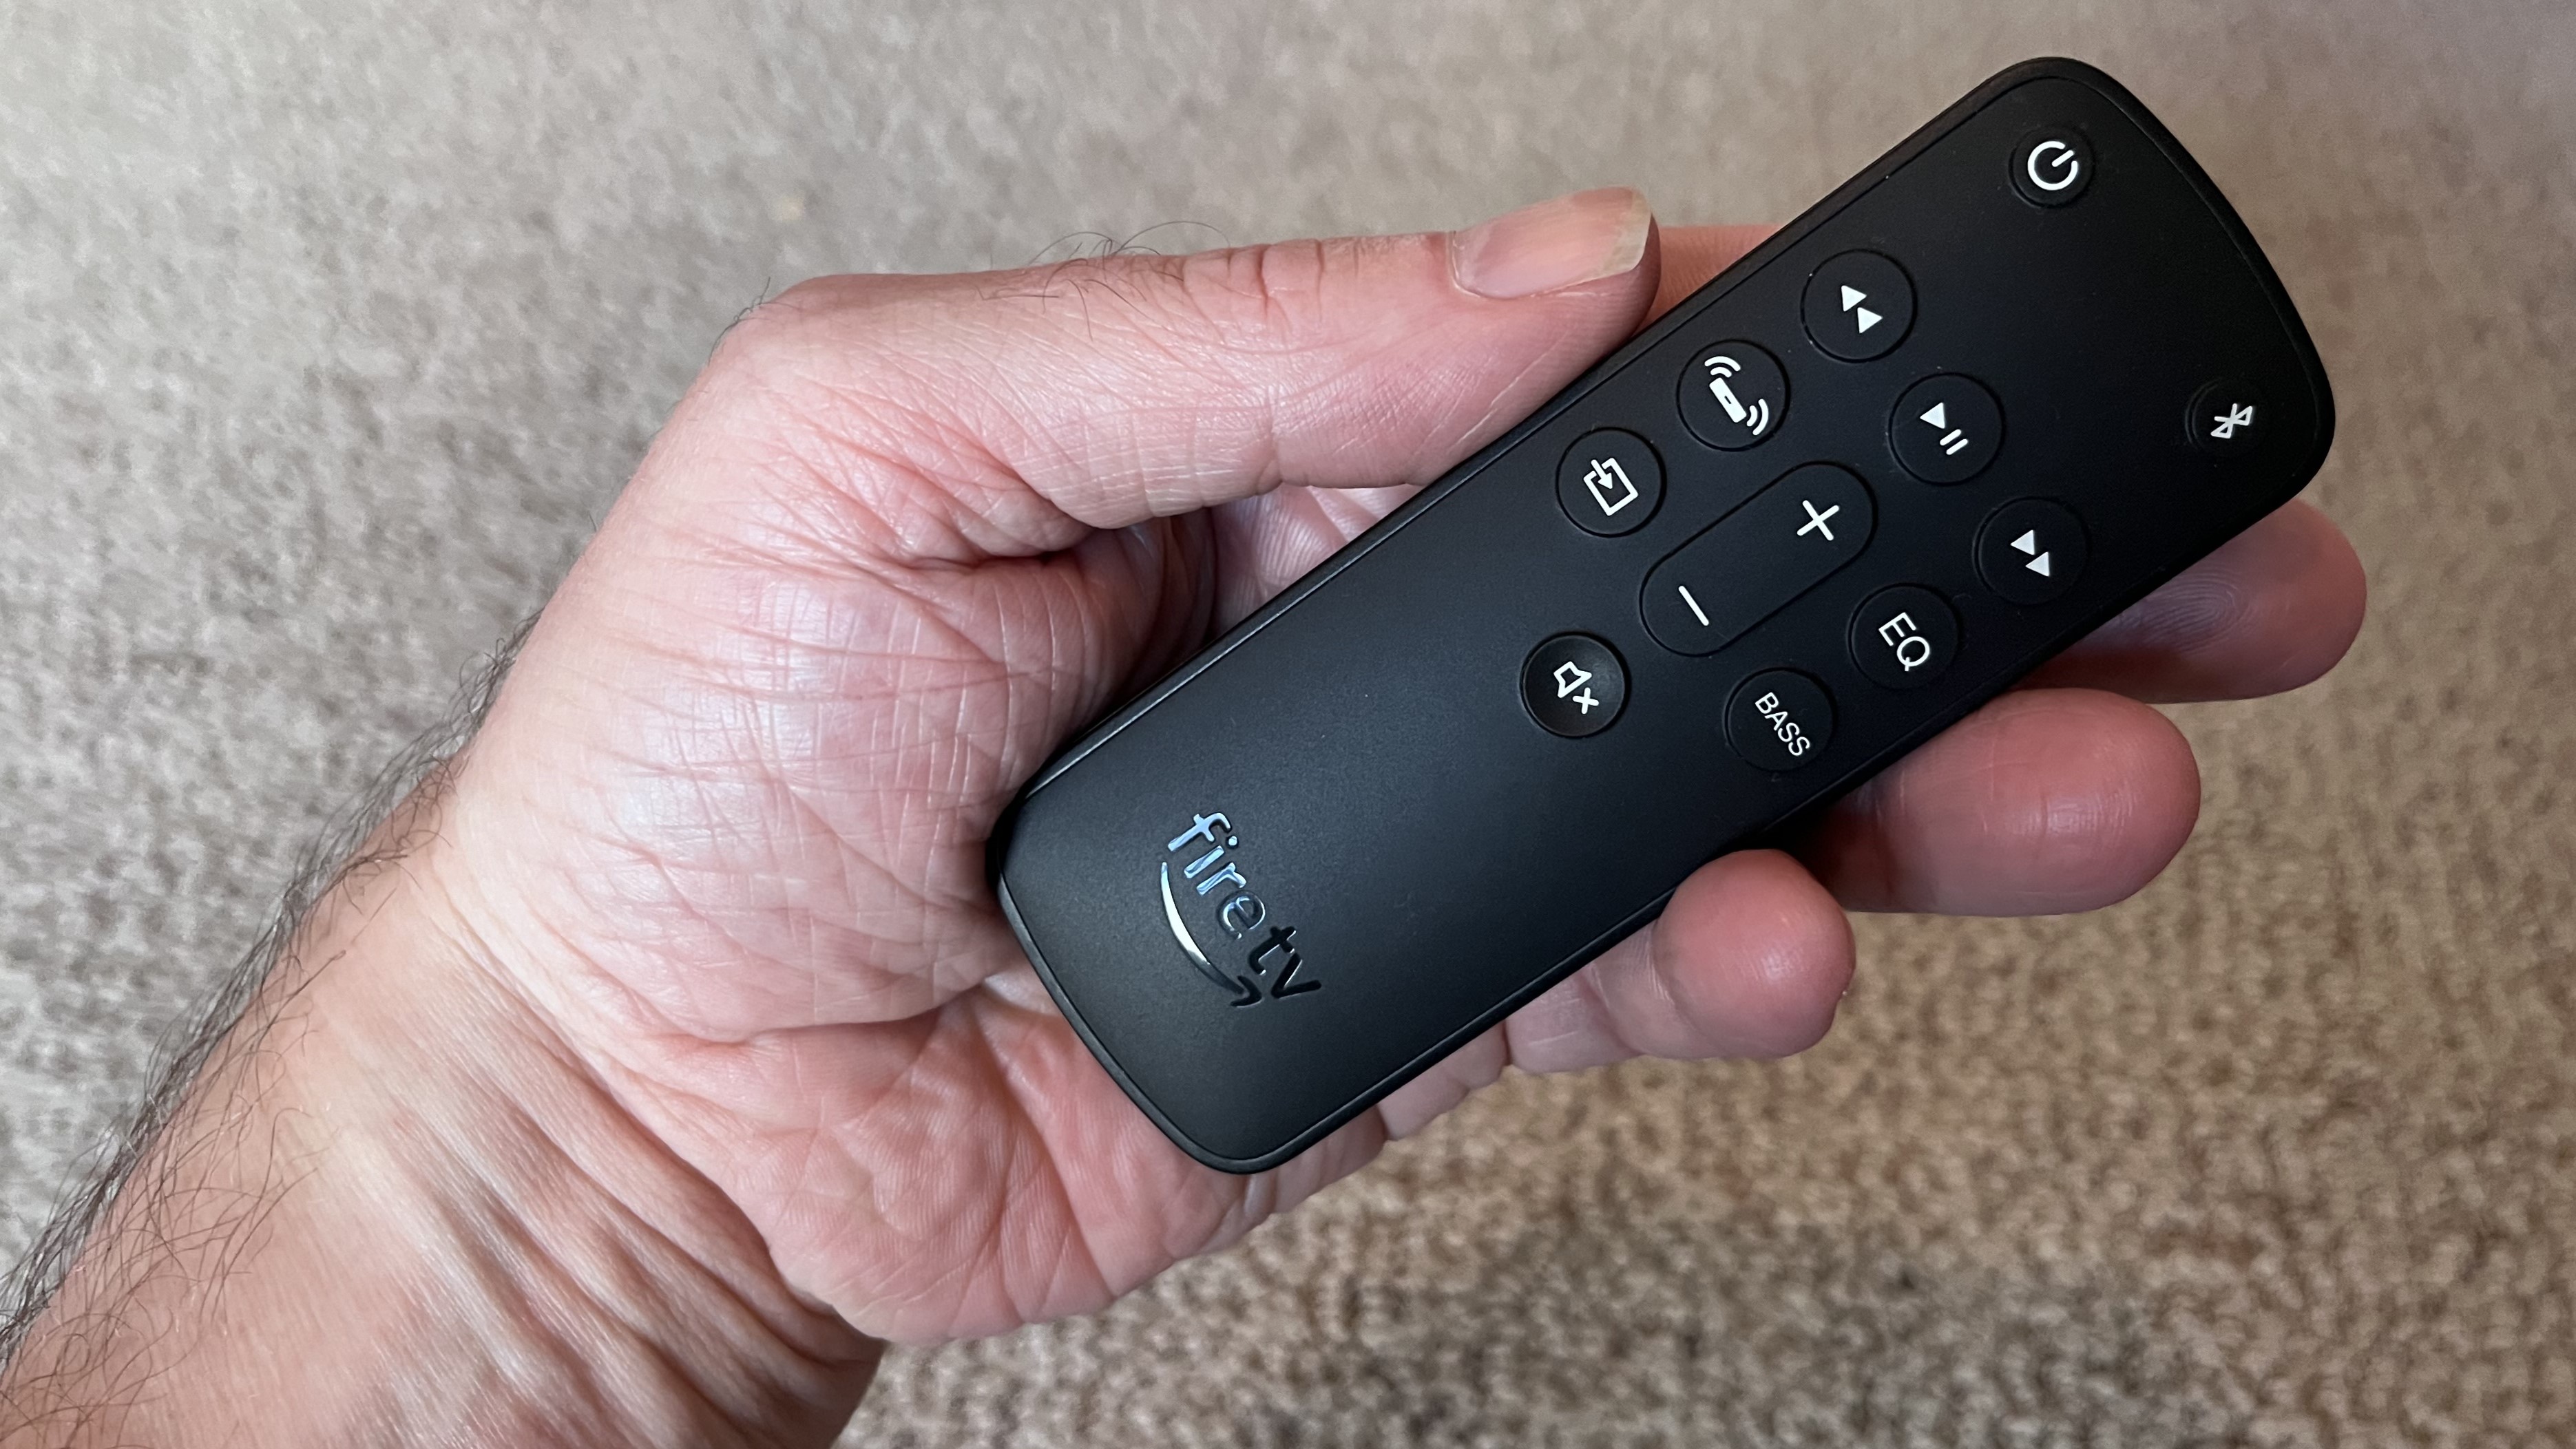 Amazon Fire TV Soundbar remote control in hand